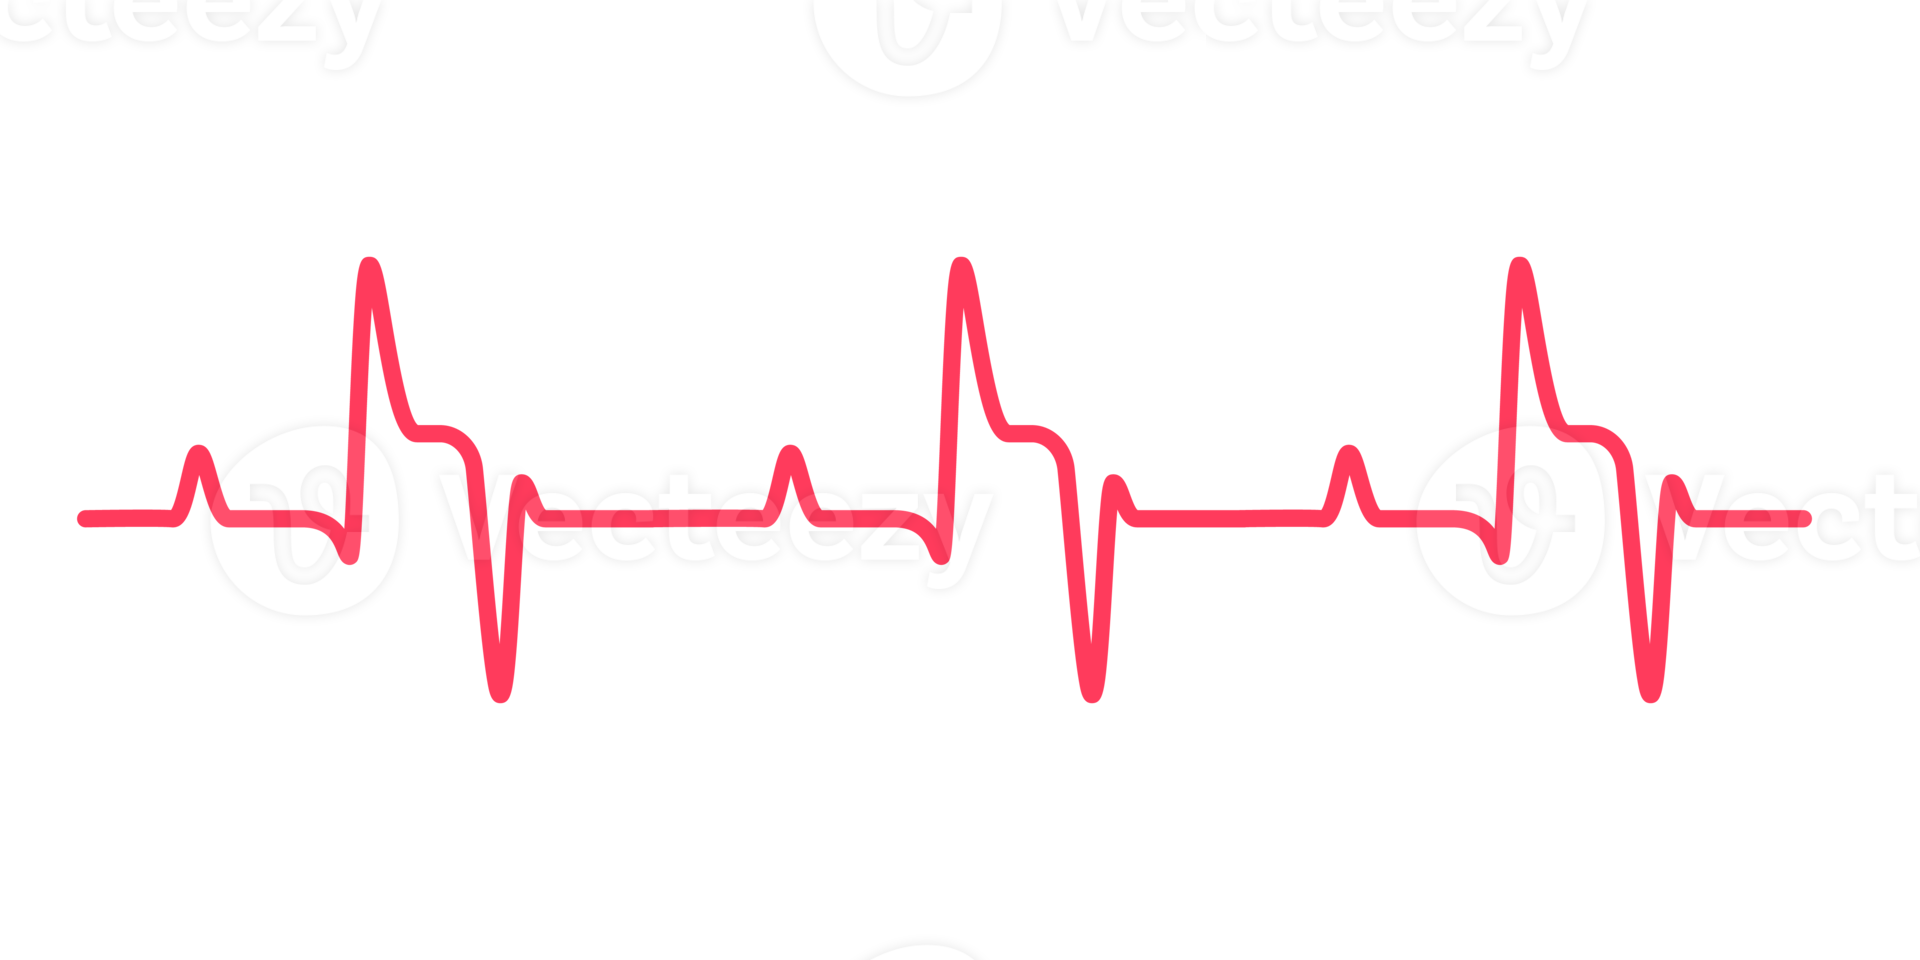 Herz Rhythmus Graph Überprüfung Ihre Herzschlag zum Diagnose png